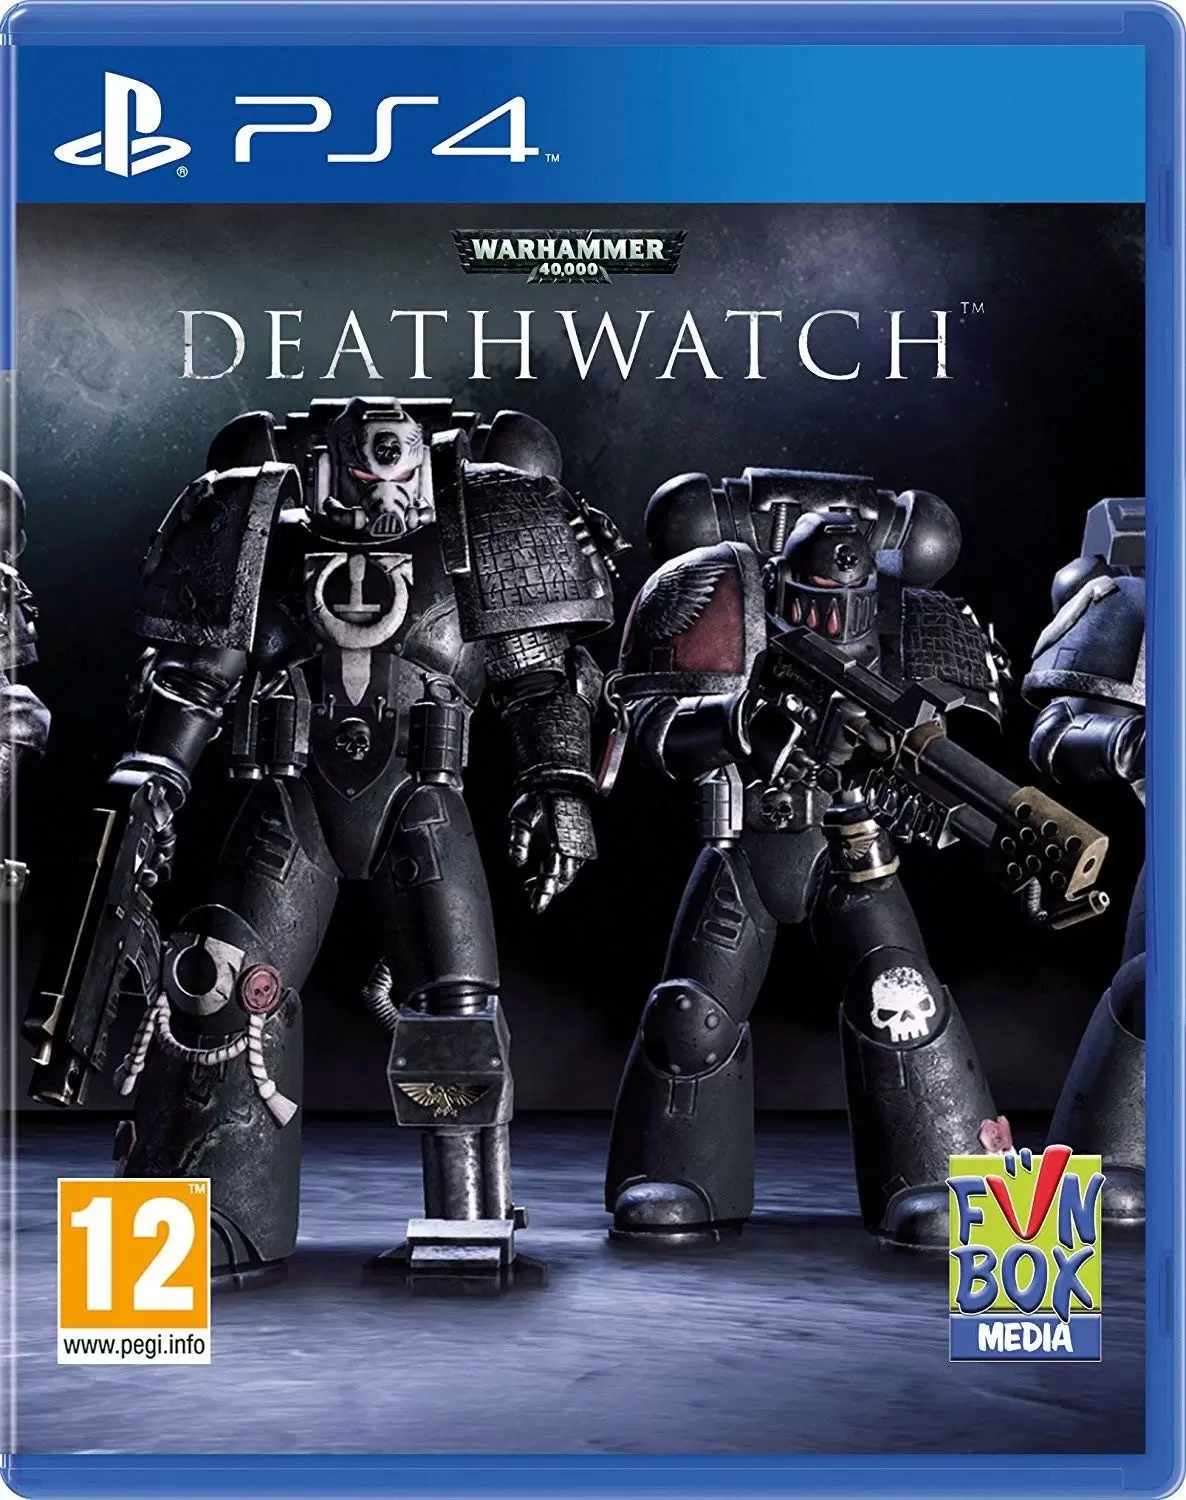 PS4 Games - Warhammer 40,000: Deathwatch